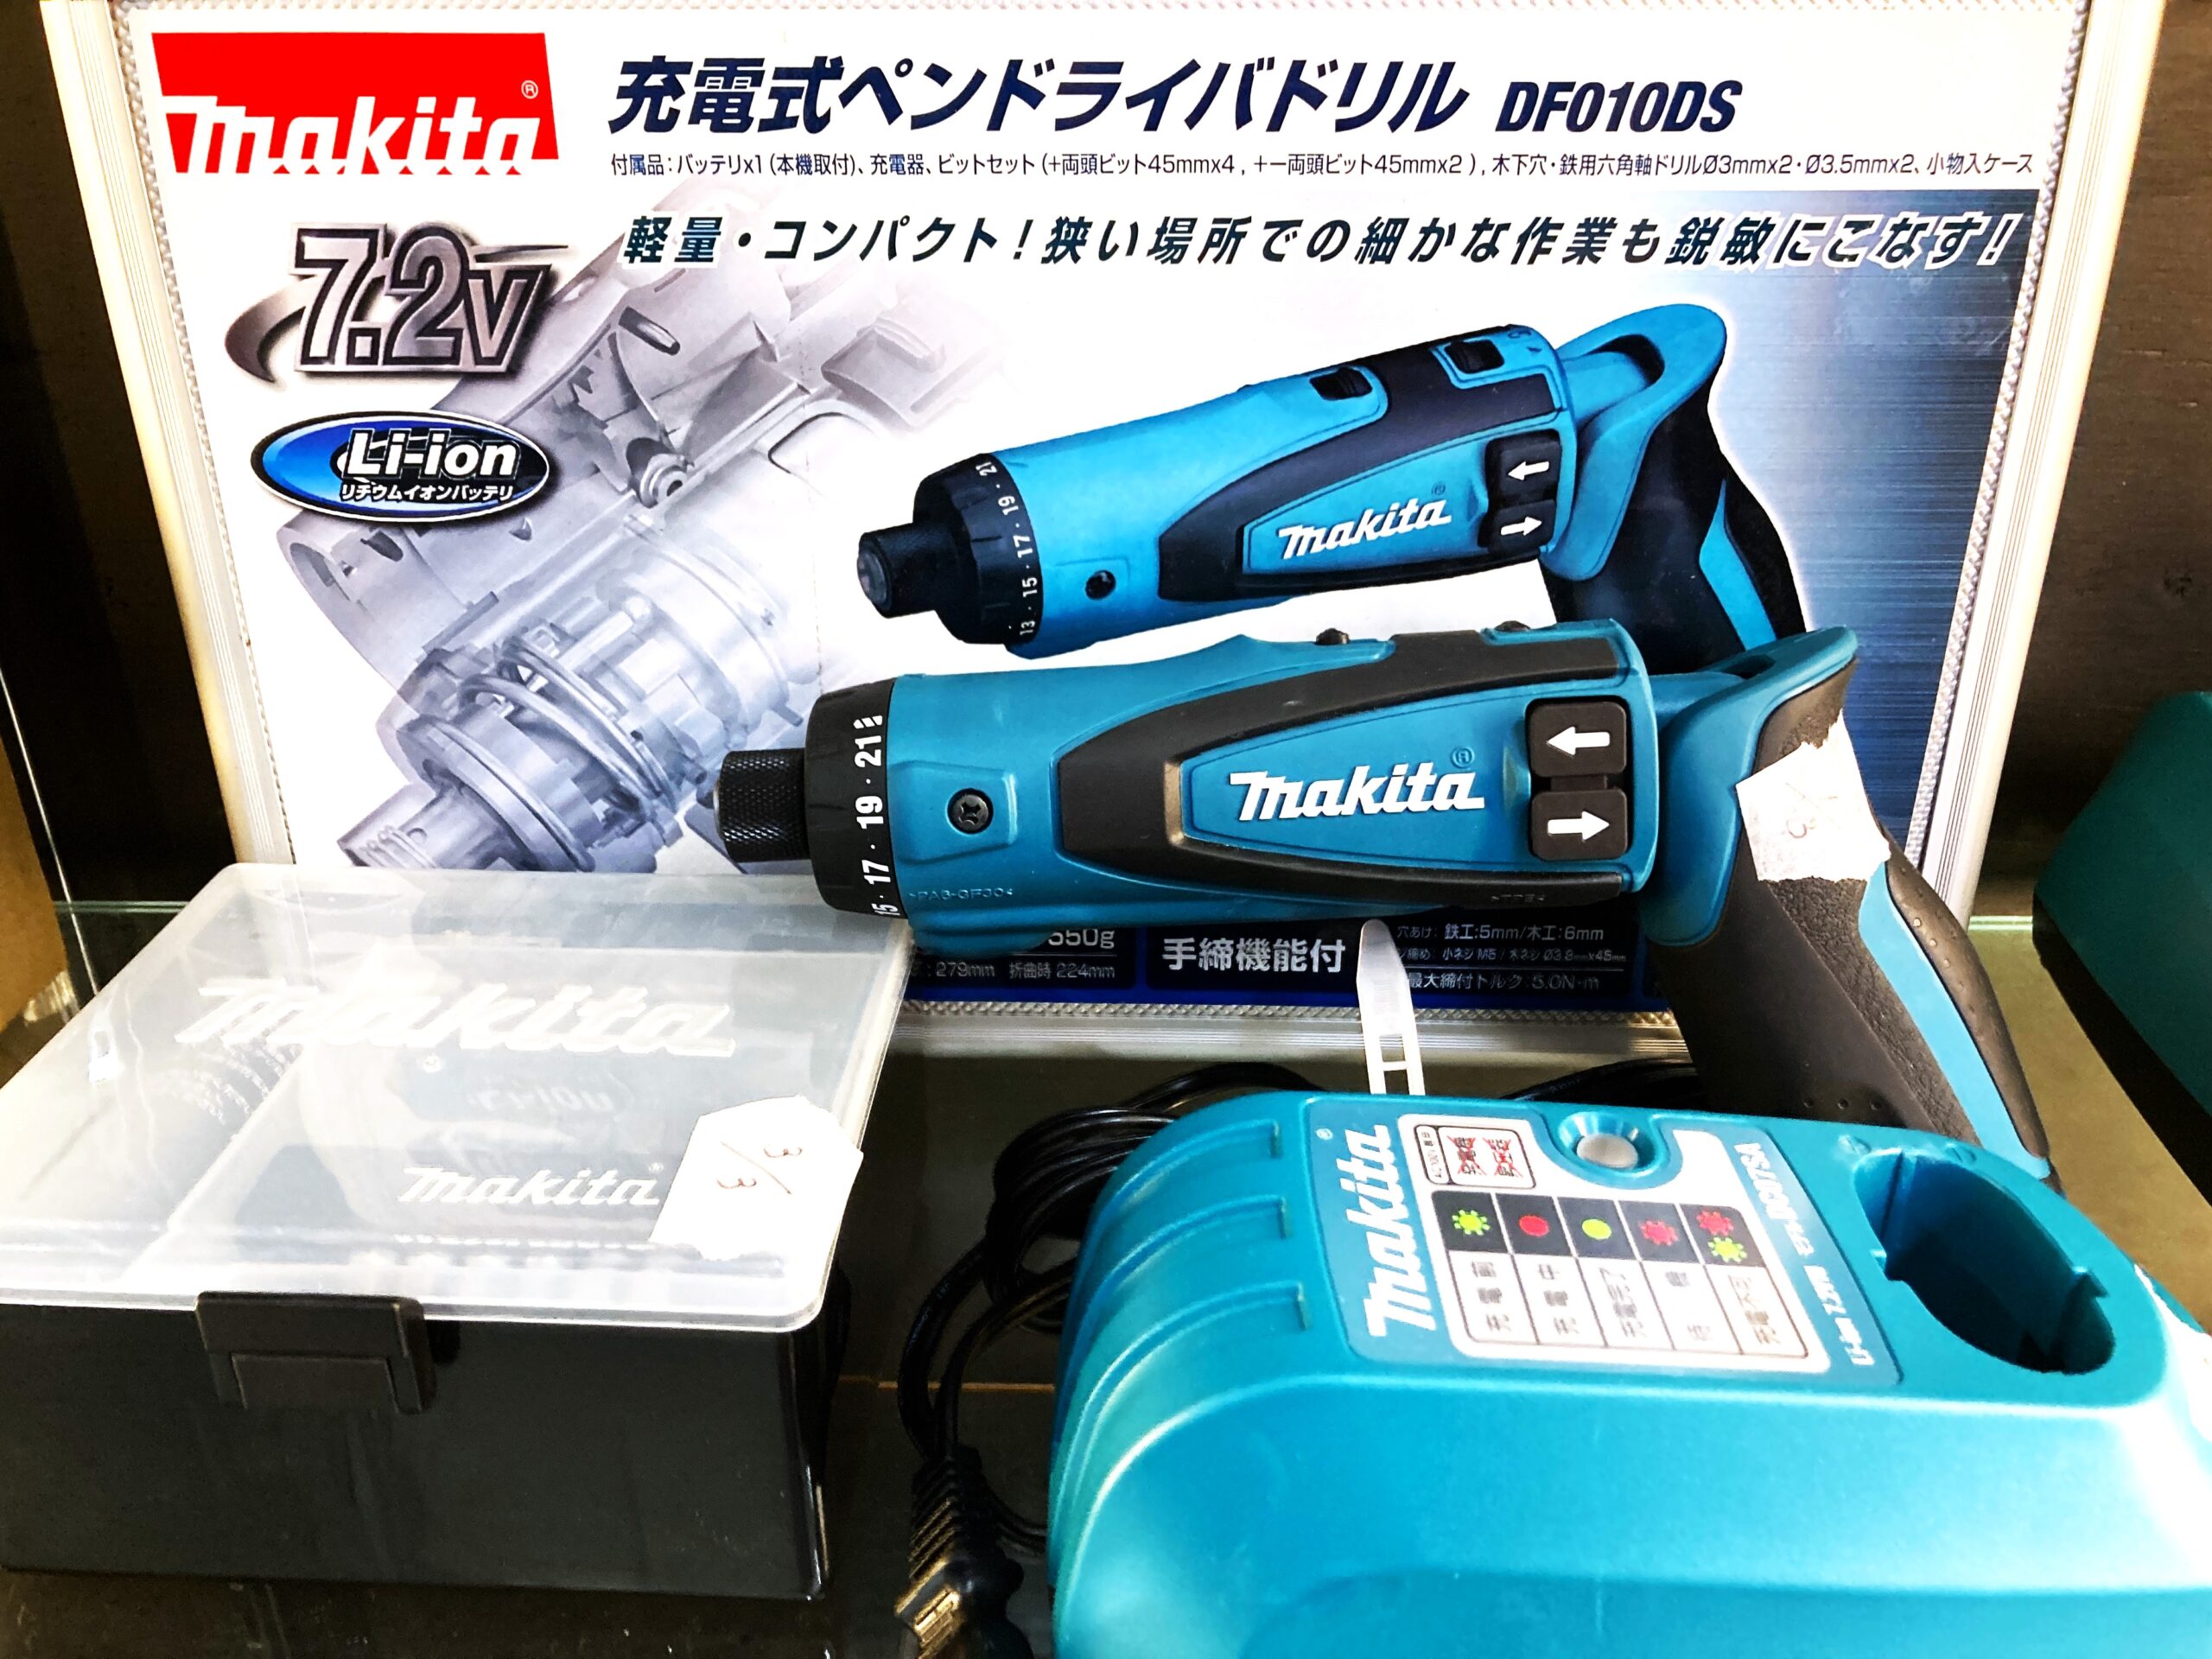 新品超激安[TO]Makita マキタ 充電式ペンドライバドリルDF010DS 正体不明のエレキギターの解体作業がほんの数分で出来る！ 楽器リペア、改造